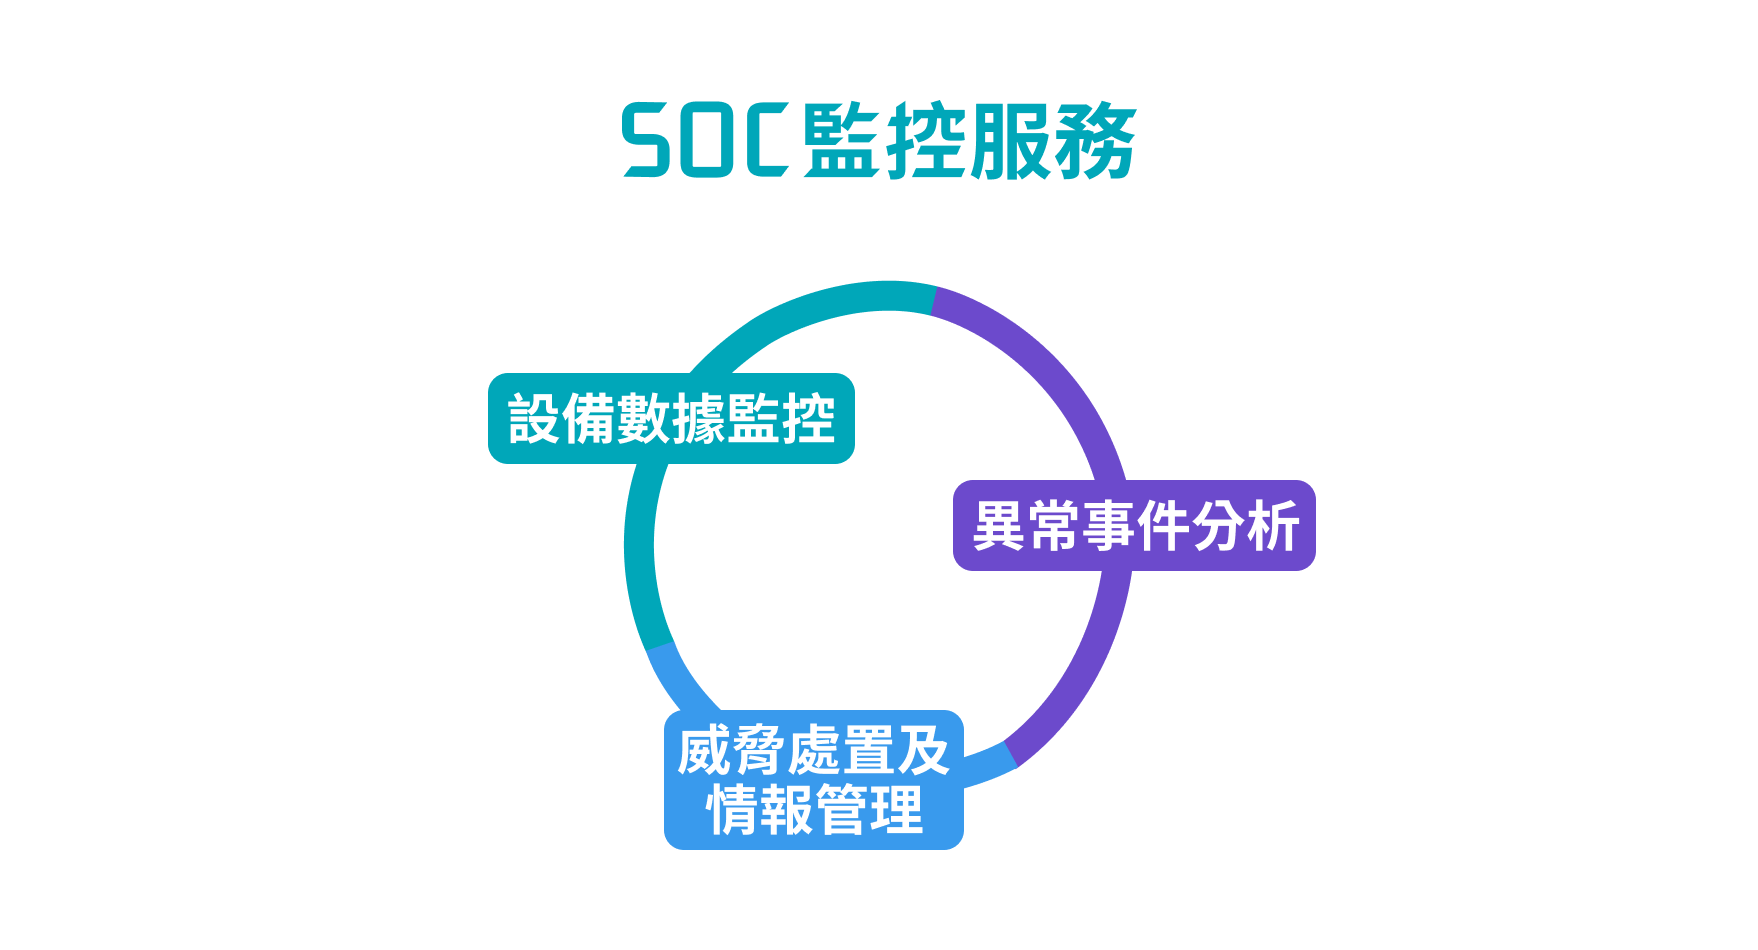 SOC監控服務3面向示意圖